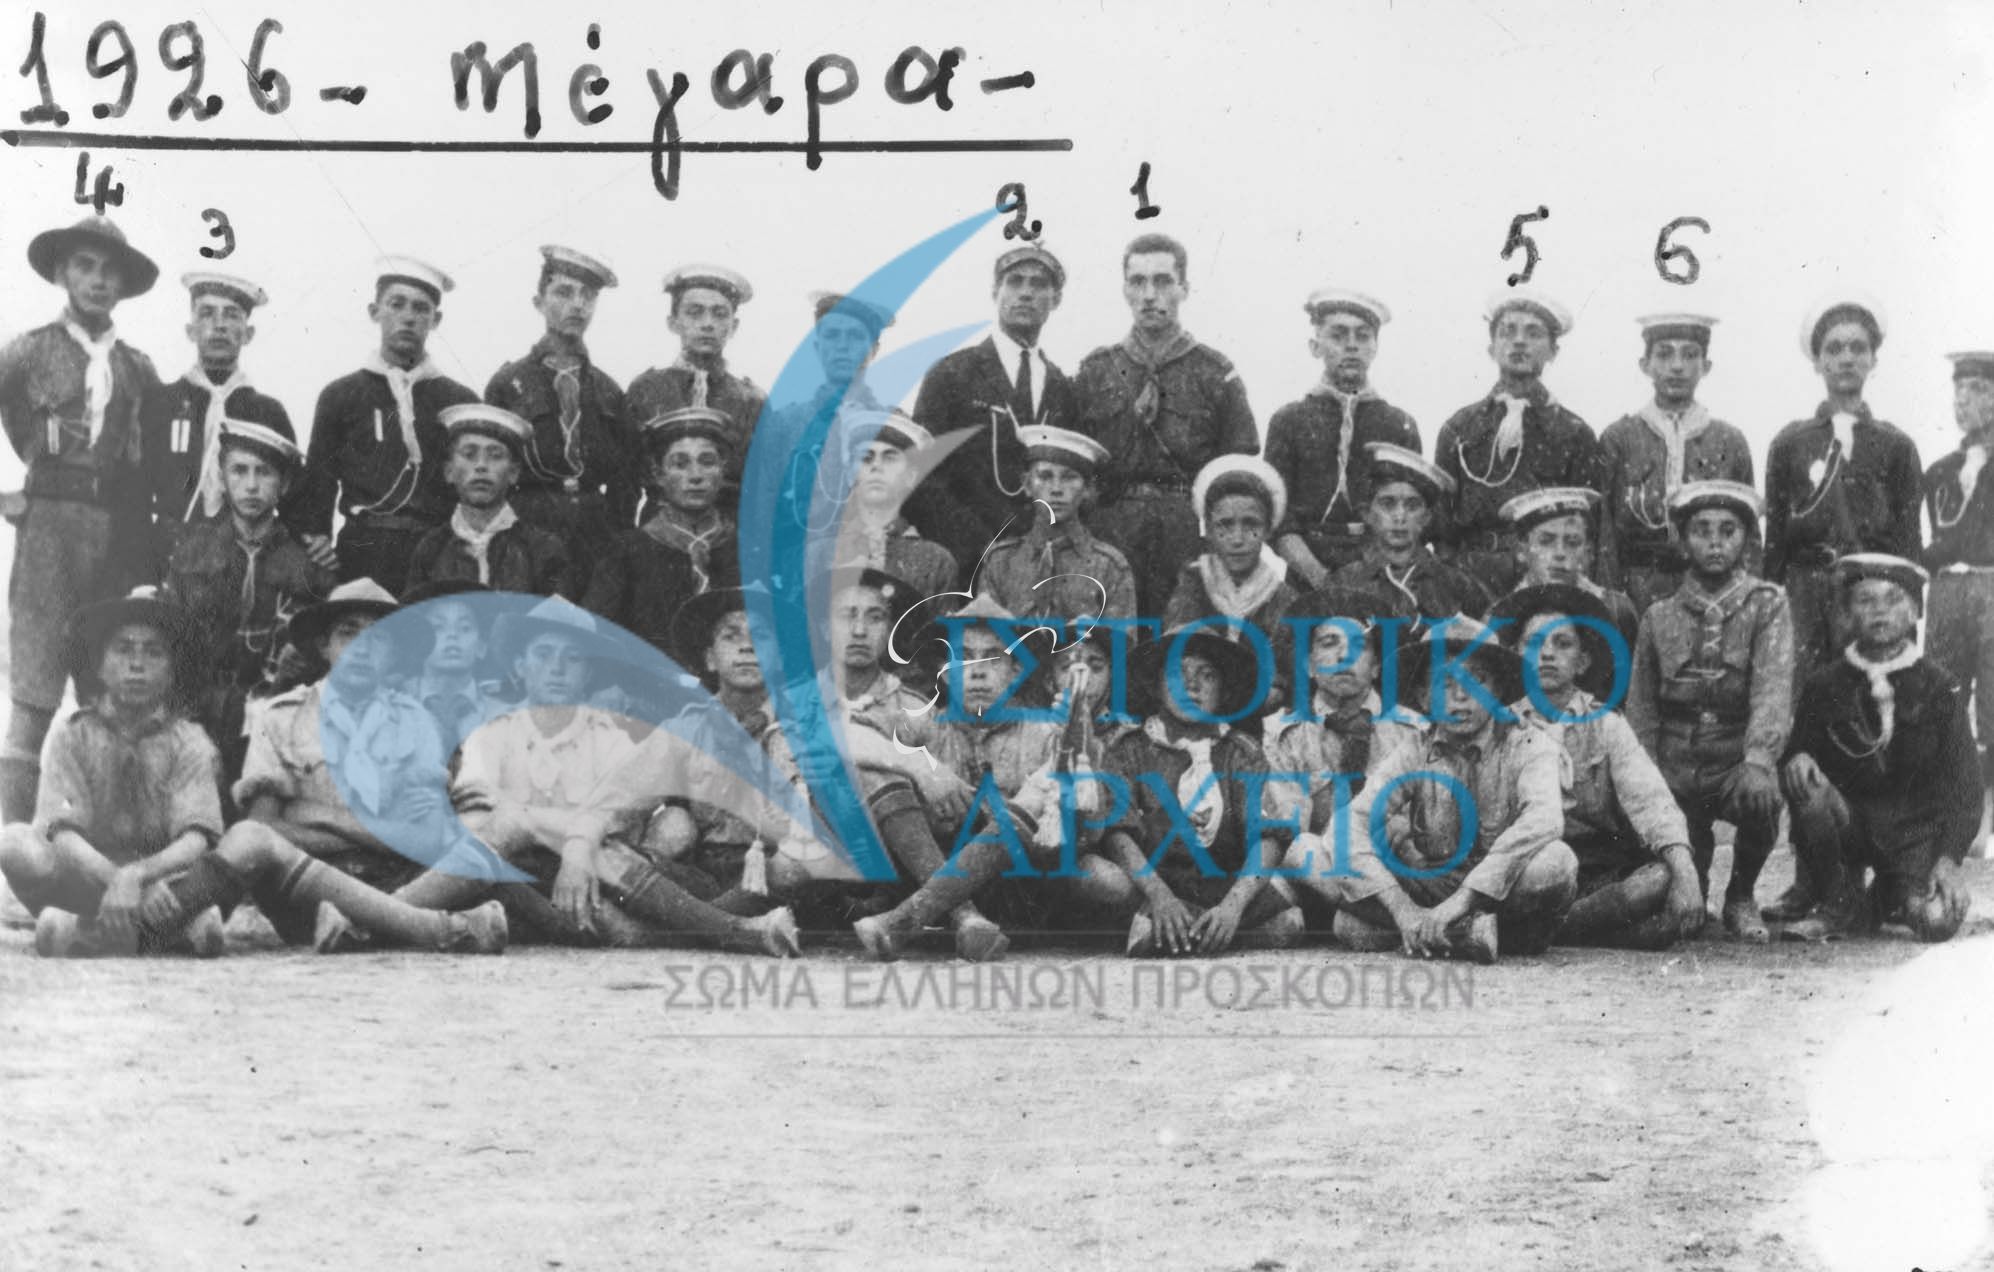 Πρόσκοποι  της Νίκαιας του  Πειραιά το 1926 σε εκδρομή  στα Μέγαρα. Διακρίνονται οι:  1. Μαραμπούτης 2. Βελισσάριος 3. Λουίζος 4. Αρβανιτόπουλος